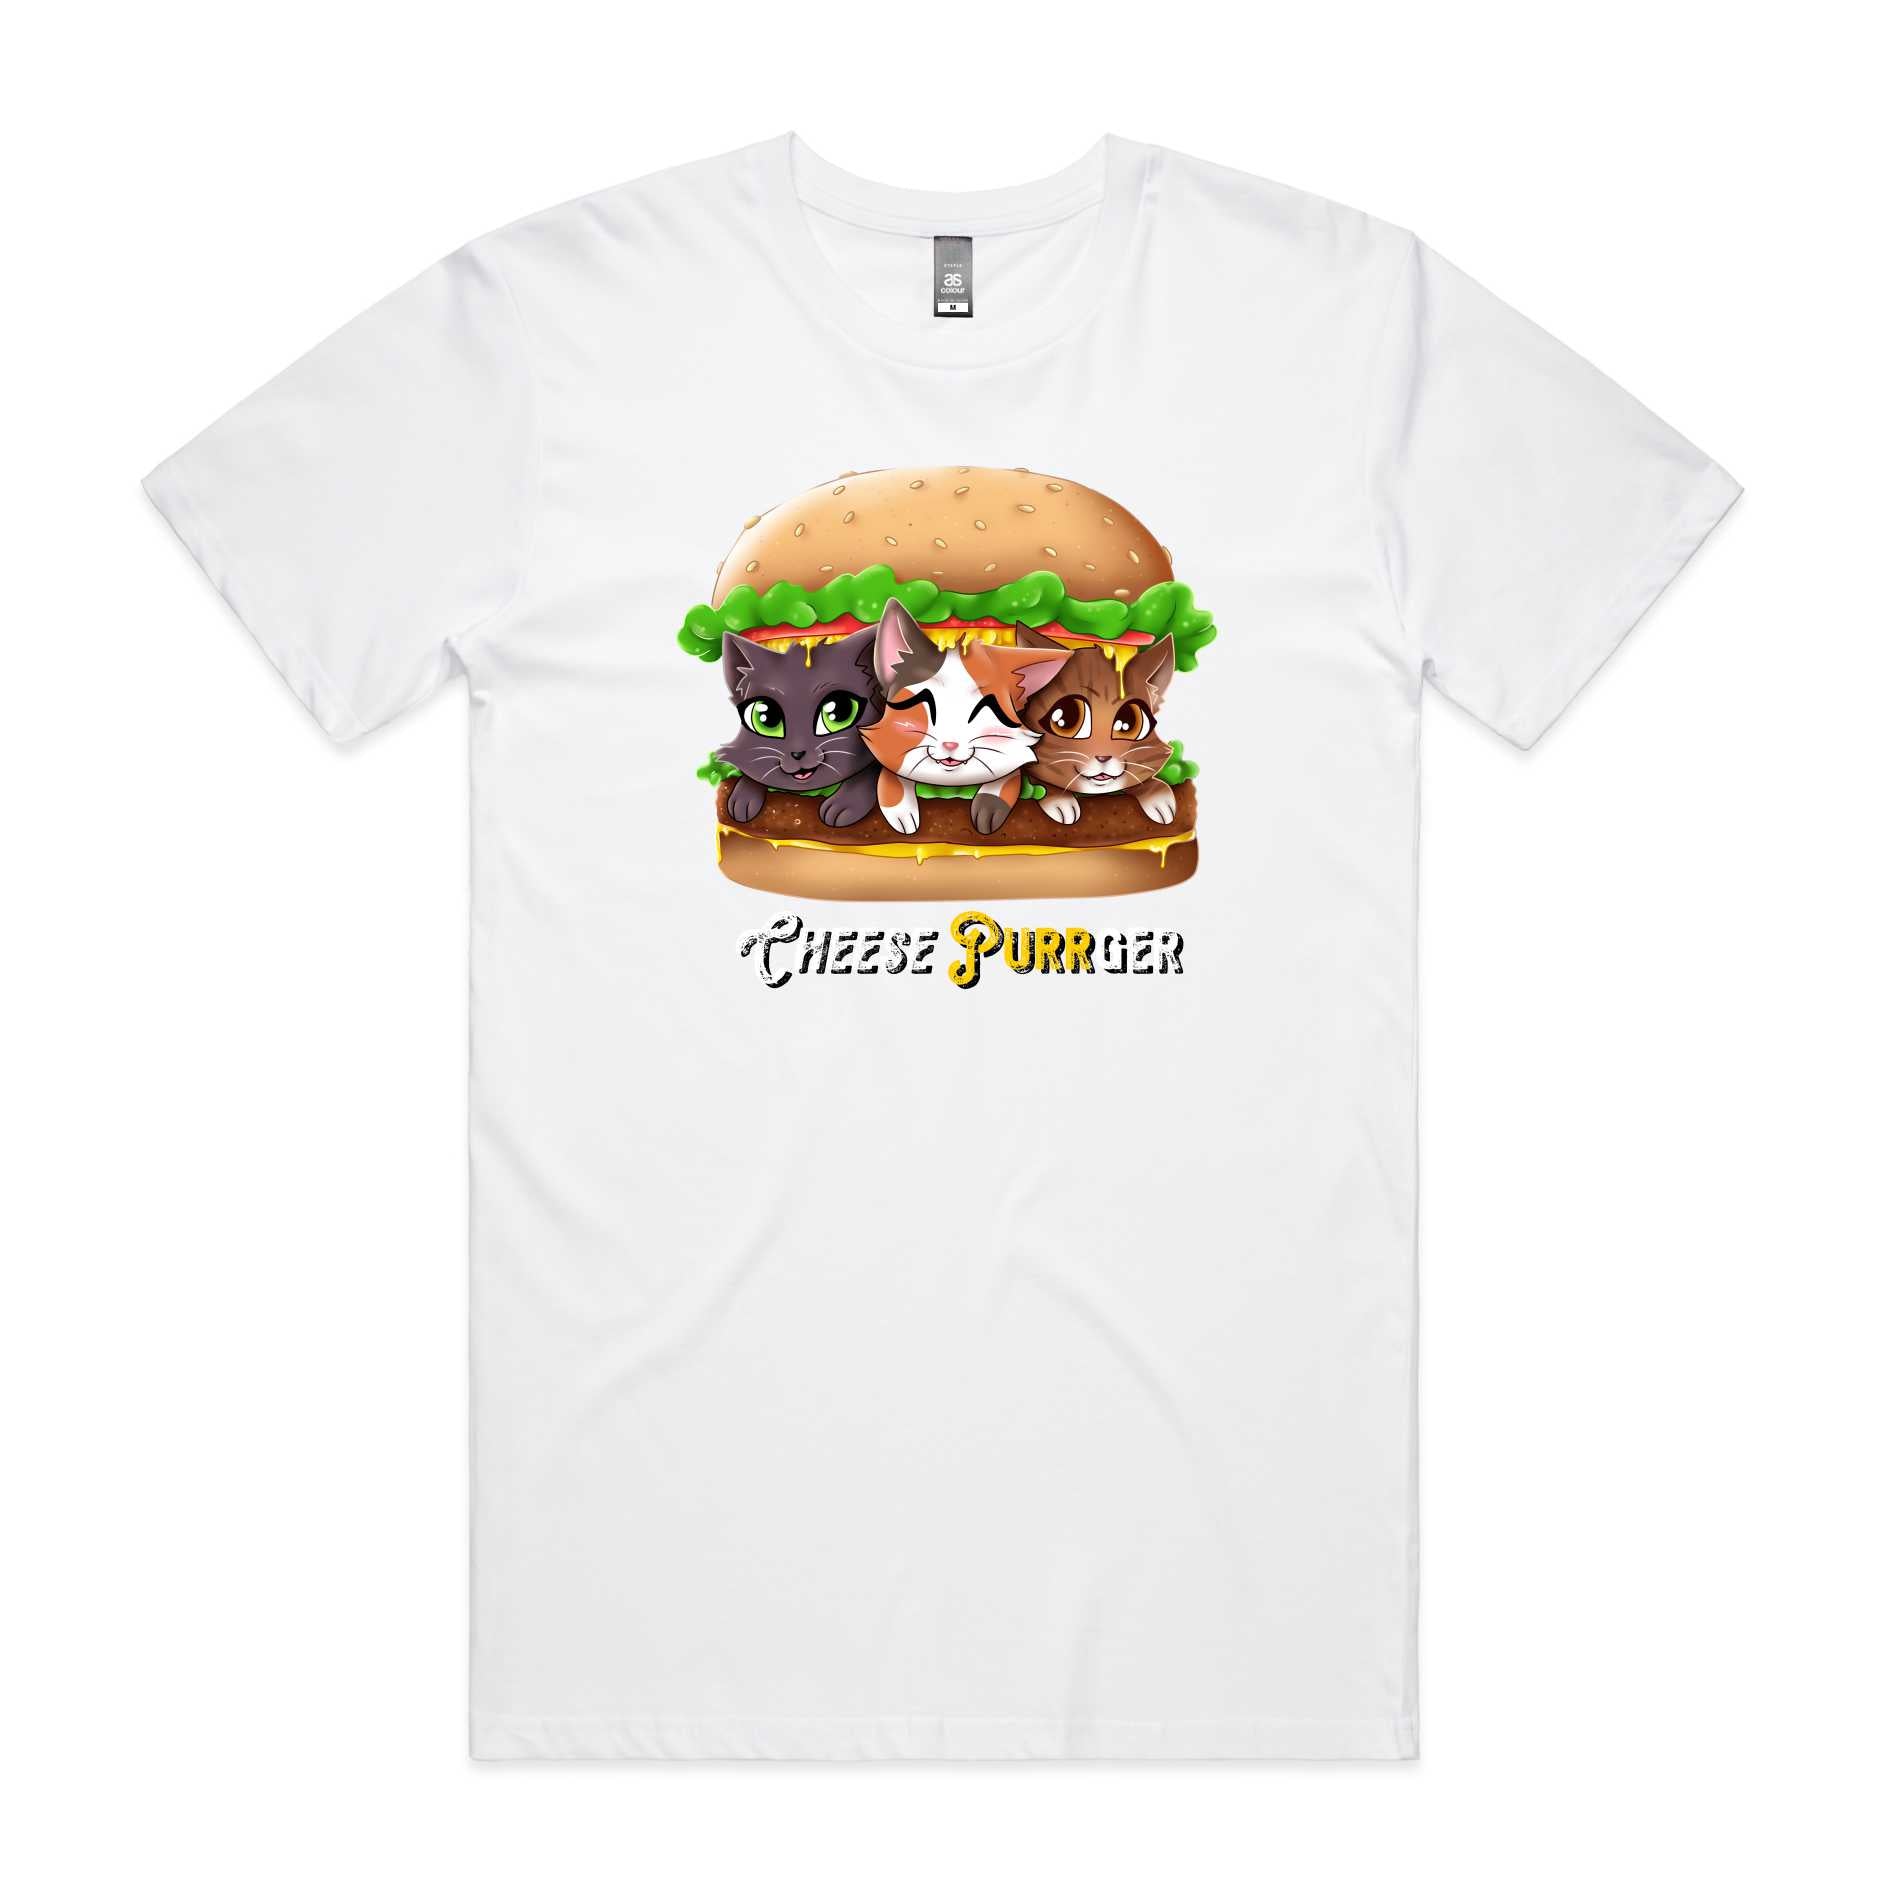 CheesePurrger T-Shirt